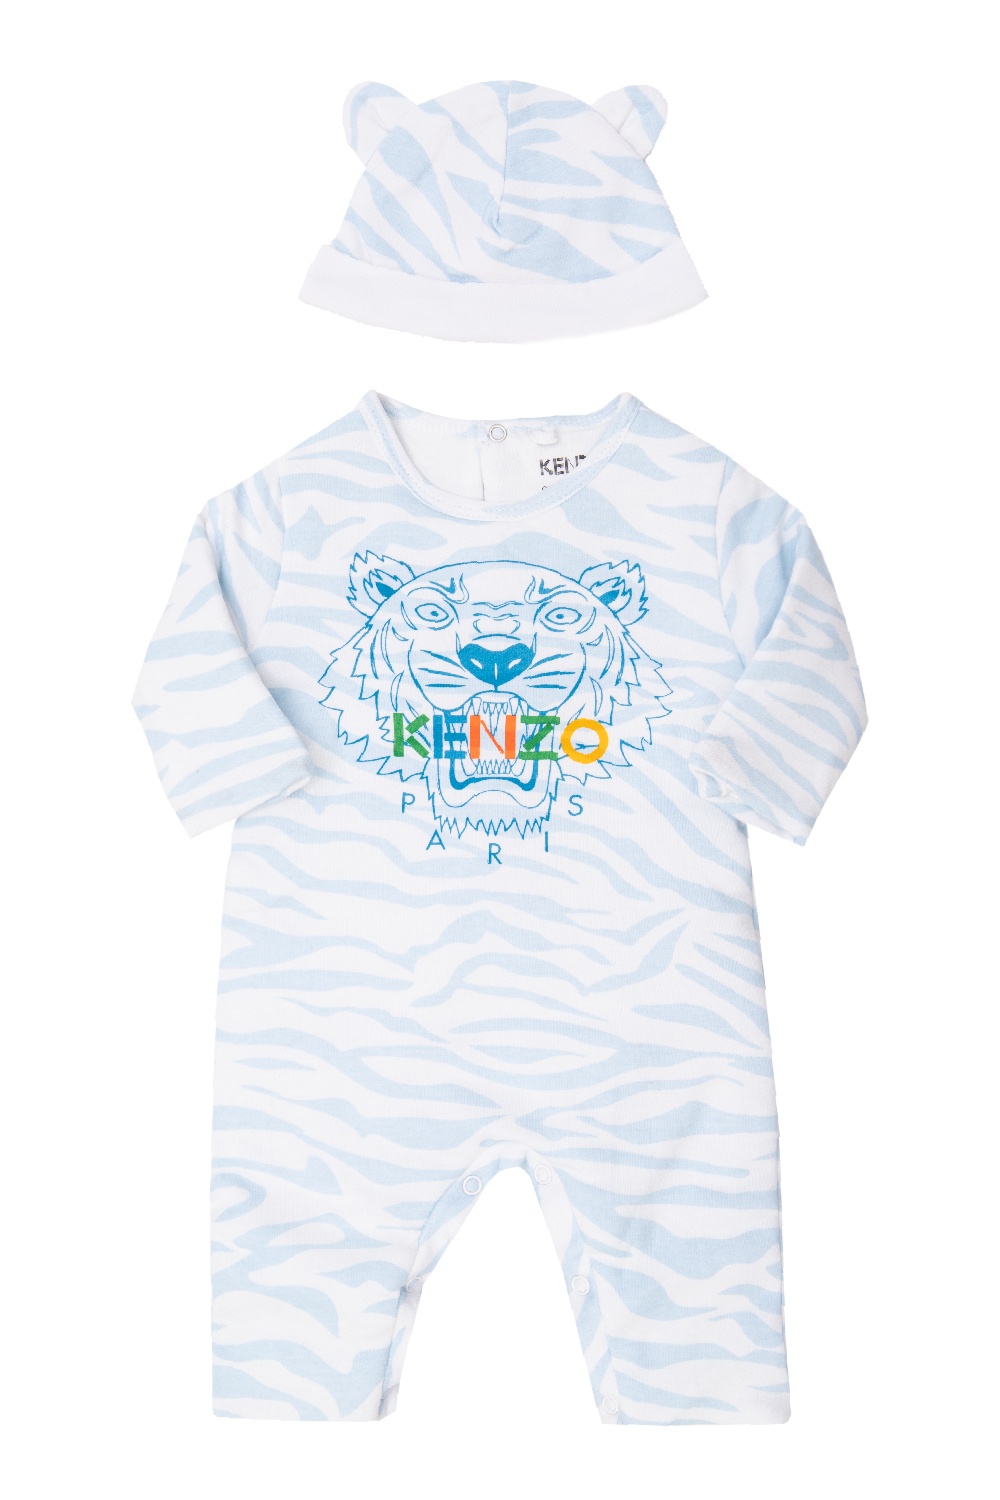 kenzo baby grow sale